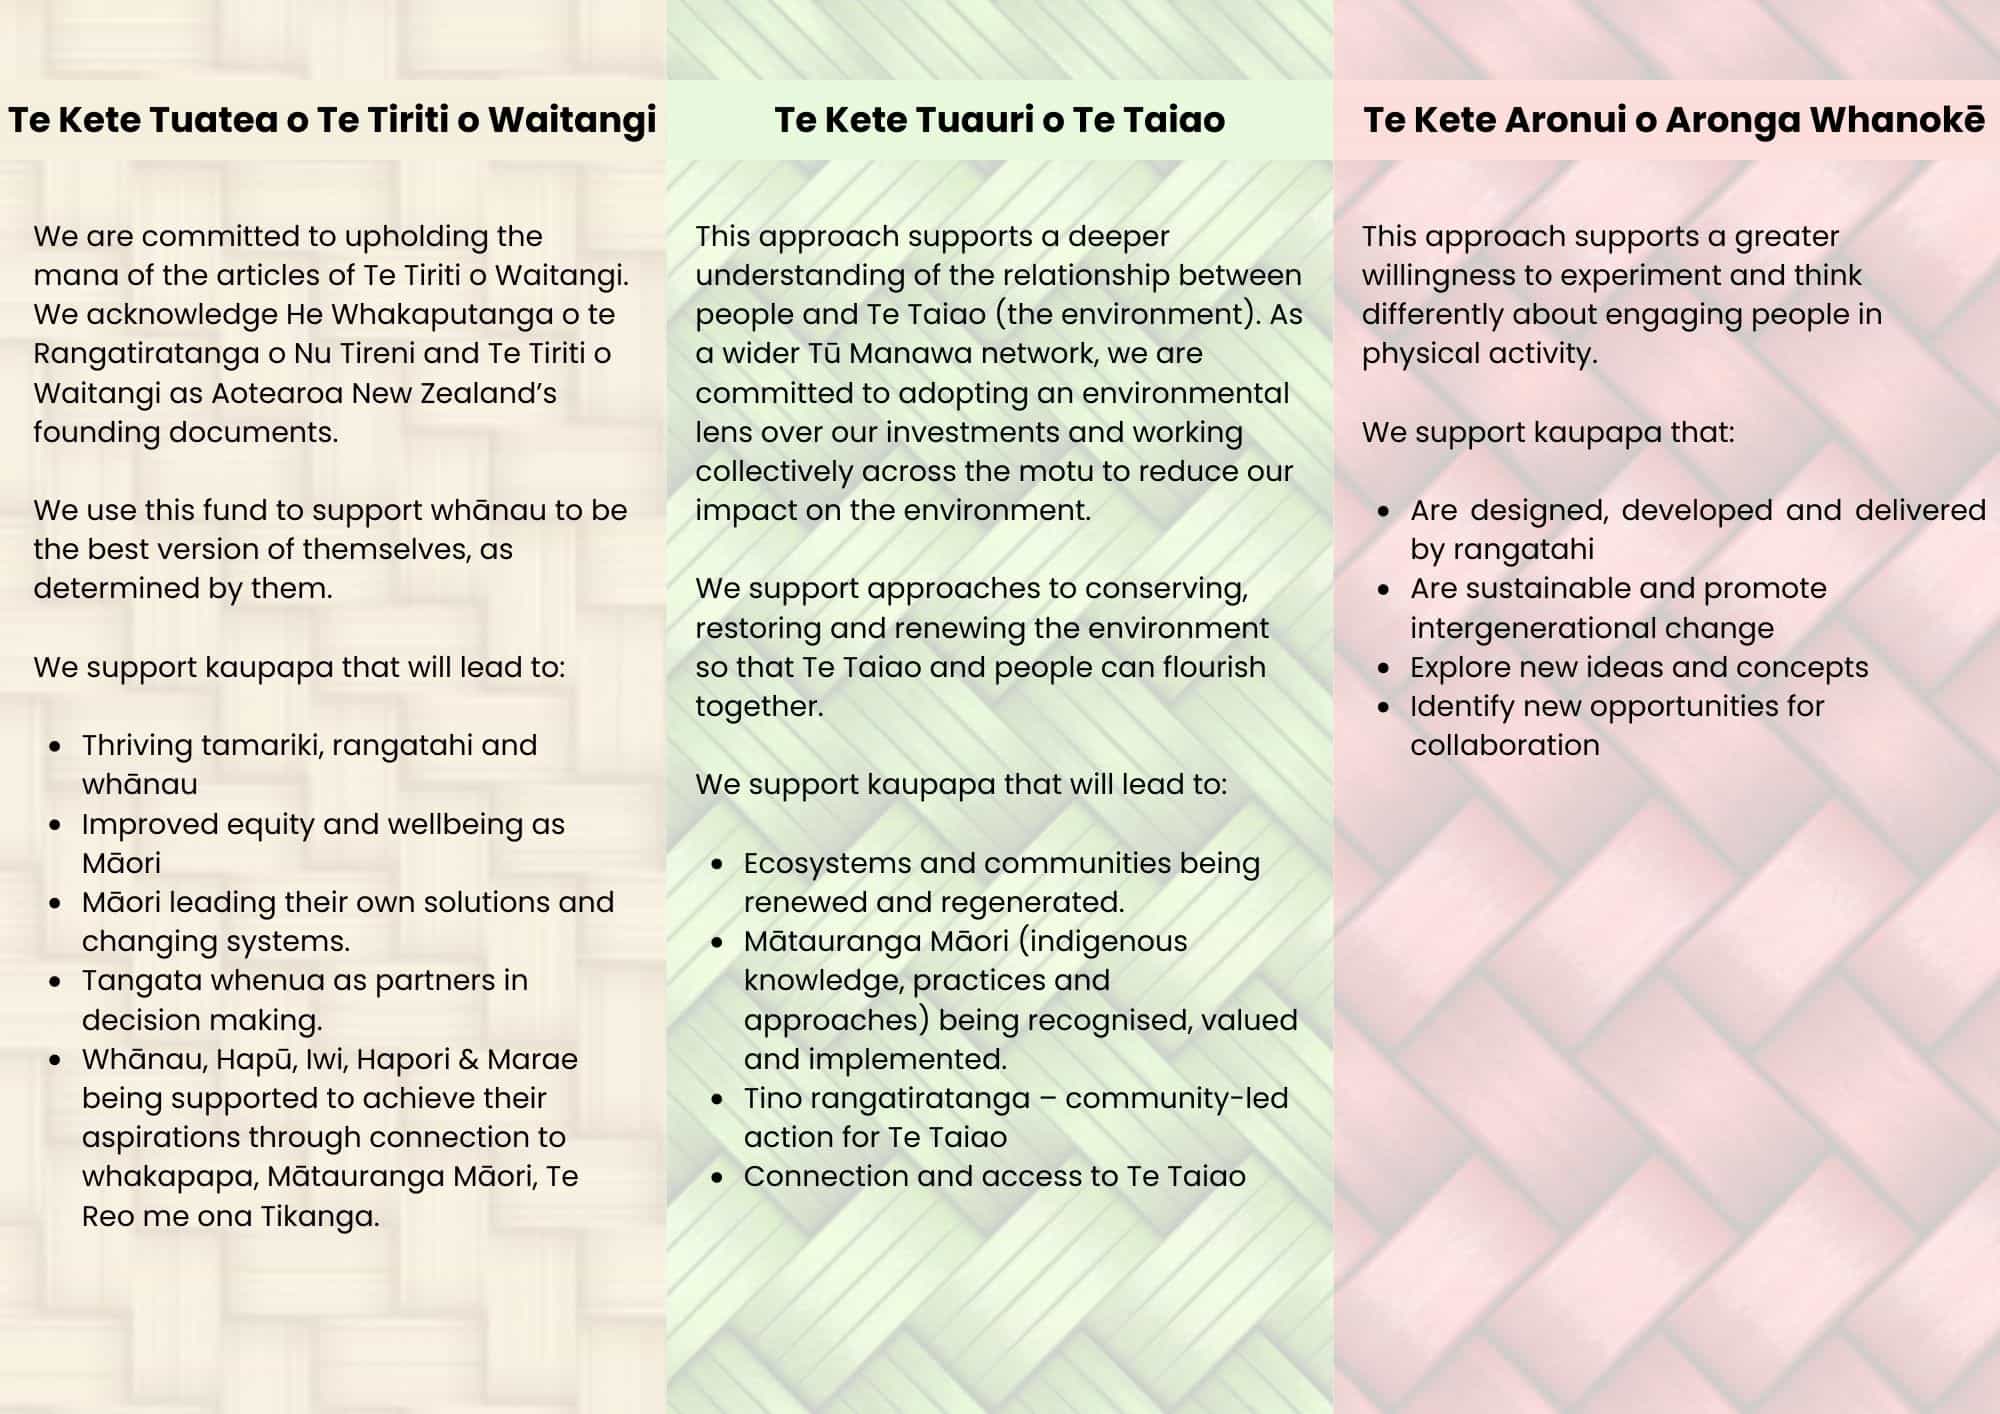 We are committed to upholding the mana of the articles of Te Tiriti o Waitangi. We acknowledge He Whakaputanga o te Rangatiratanga o Nu Tireni and Te Tiriti o Waitangi as Aotearoa New Zealand’s founding documents. We use this fund to support whānau to be - 1